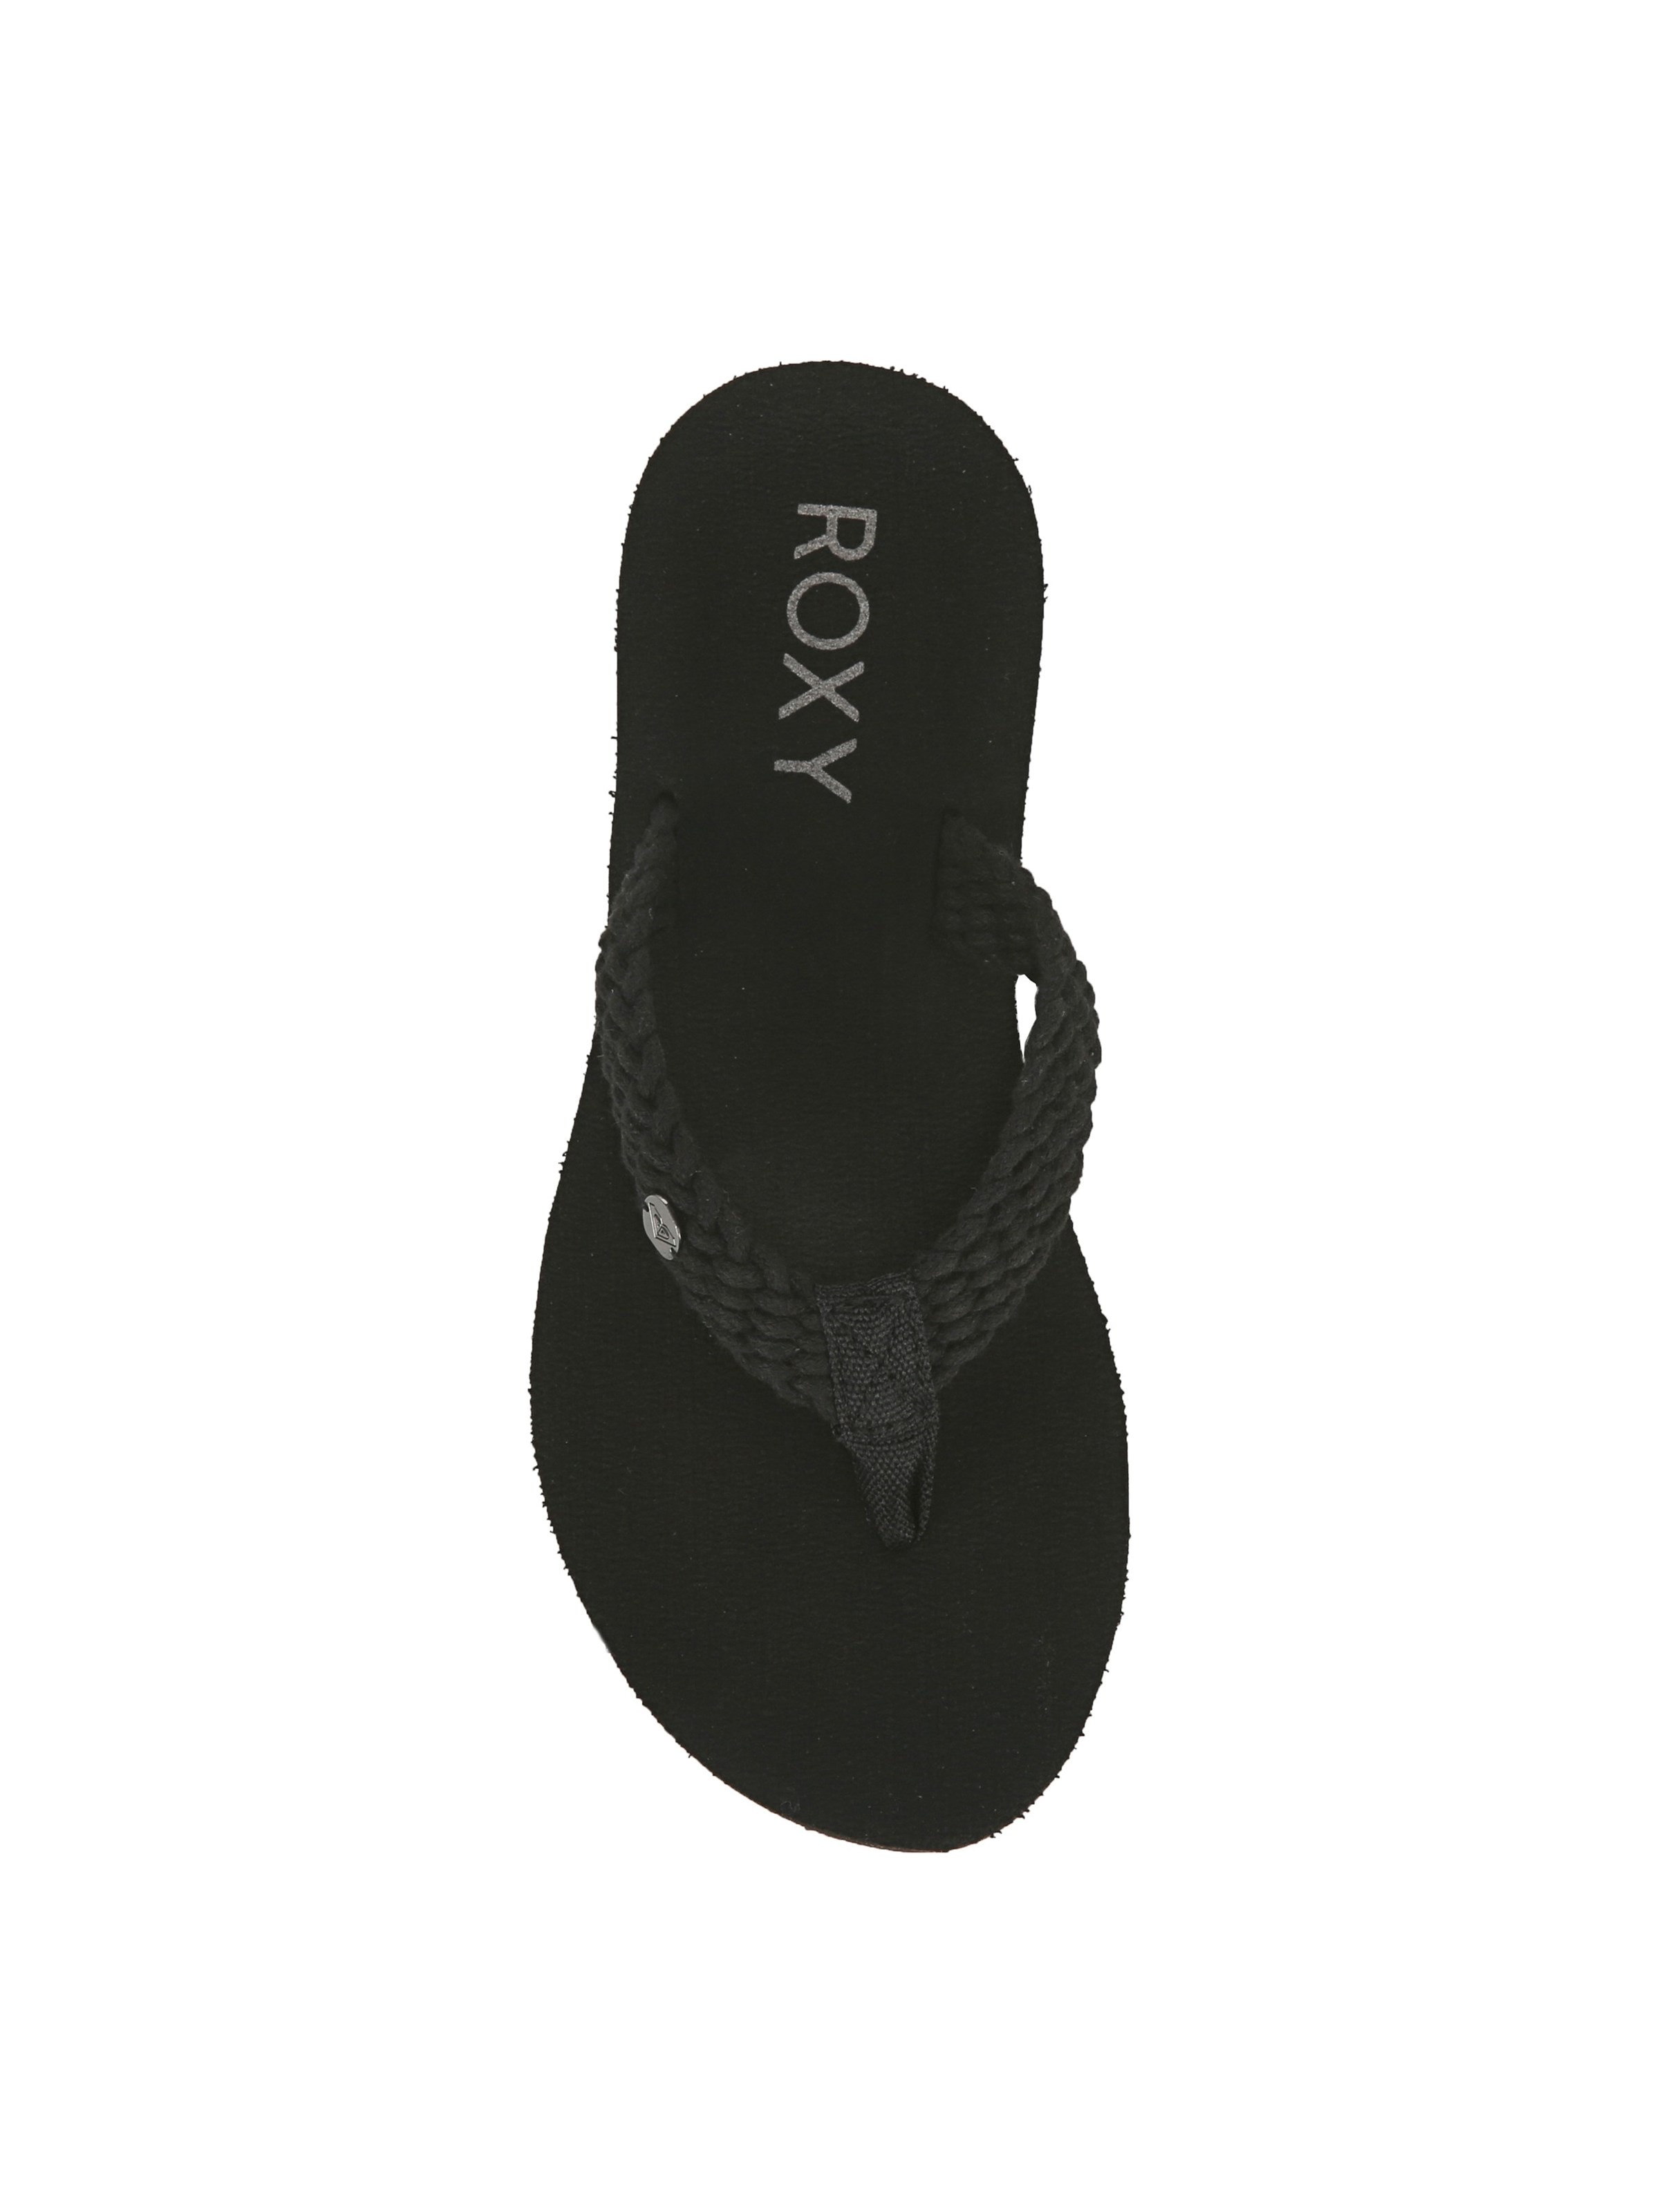 Roxy Women's Tidepool Flip Flop Sandal